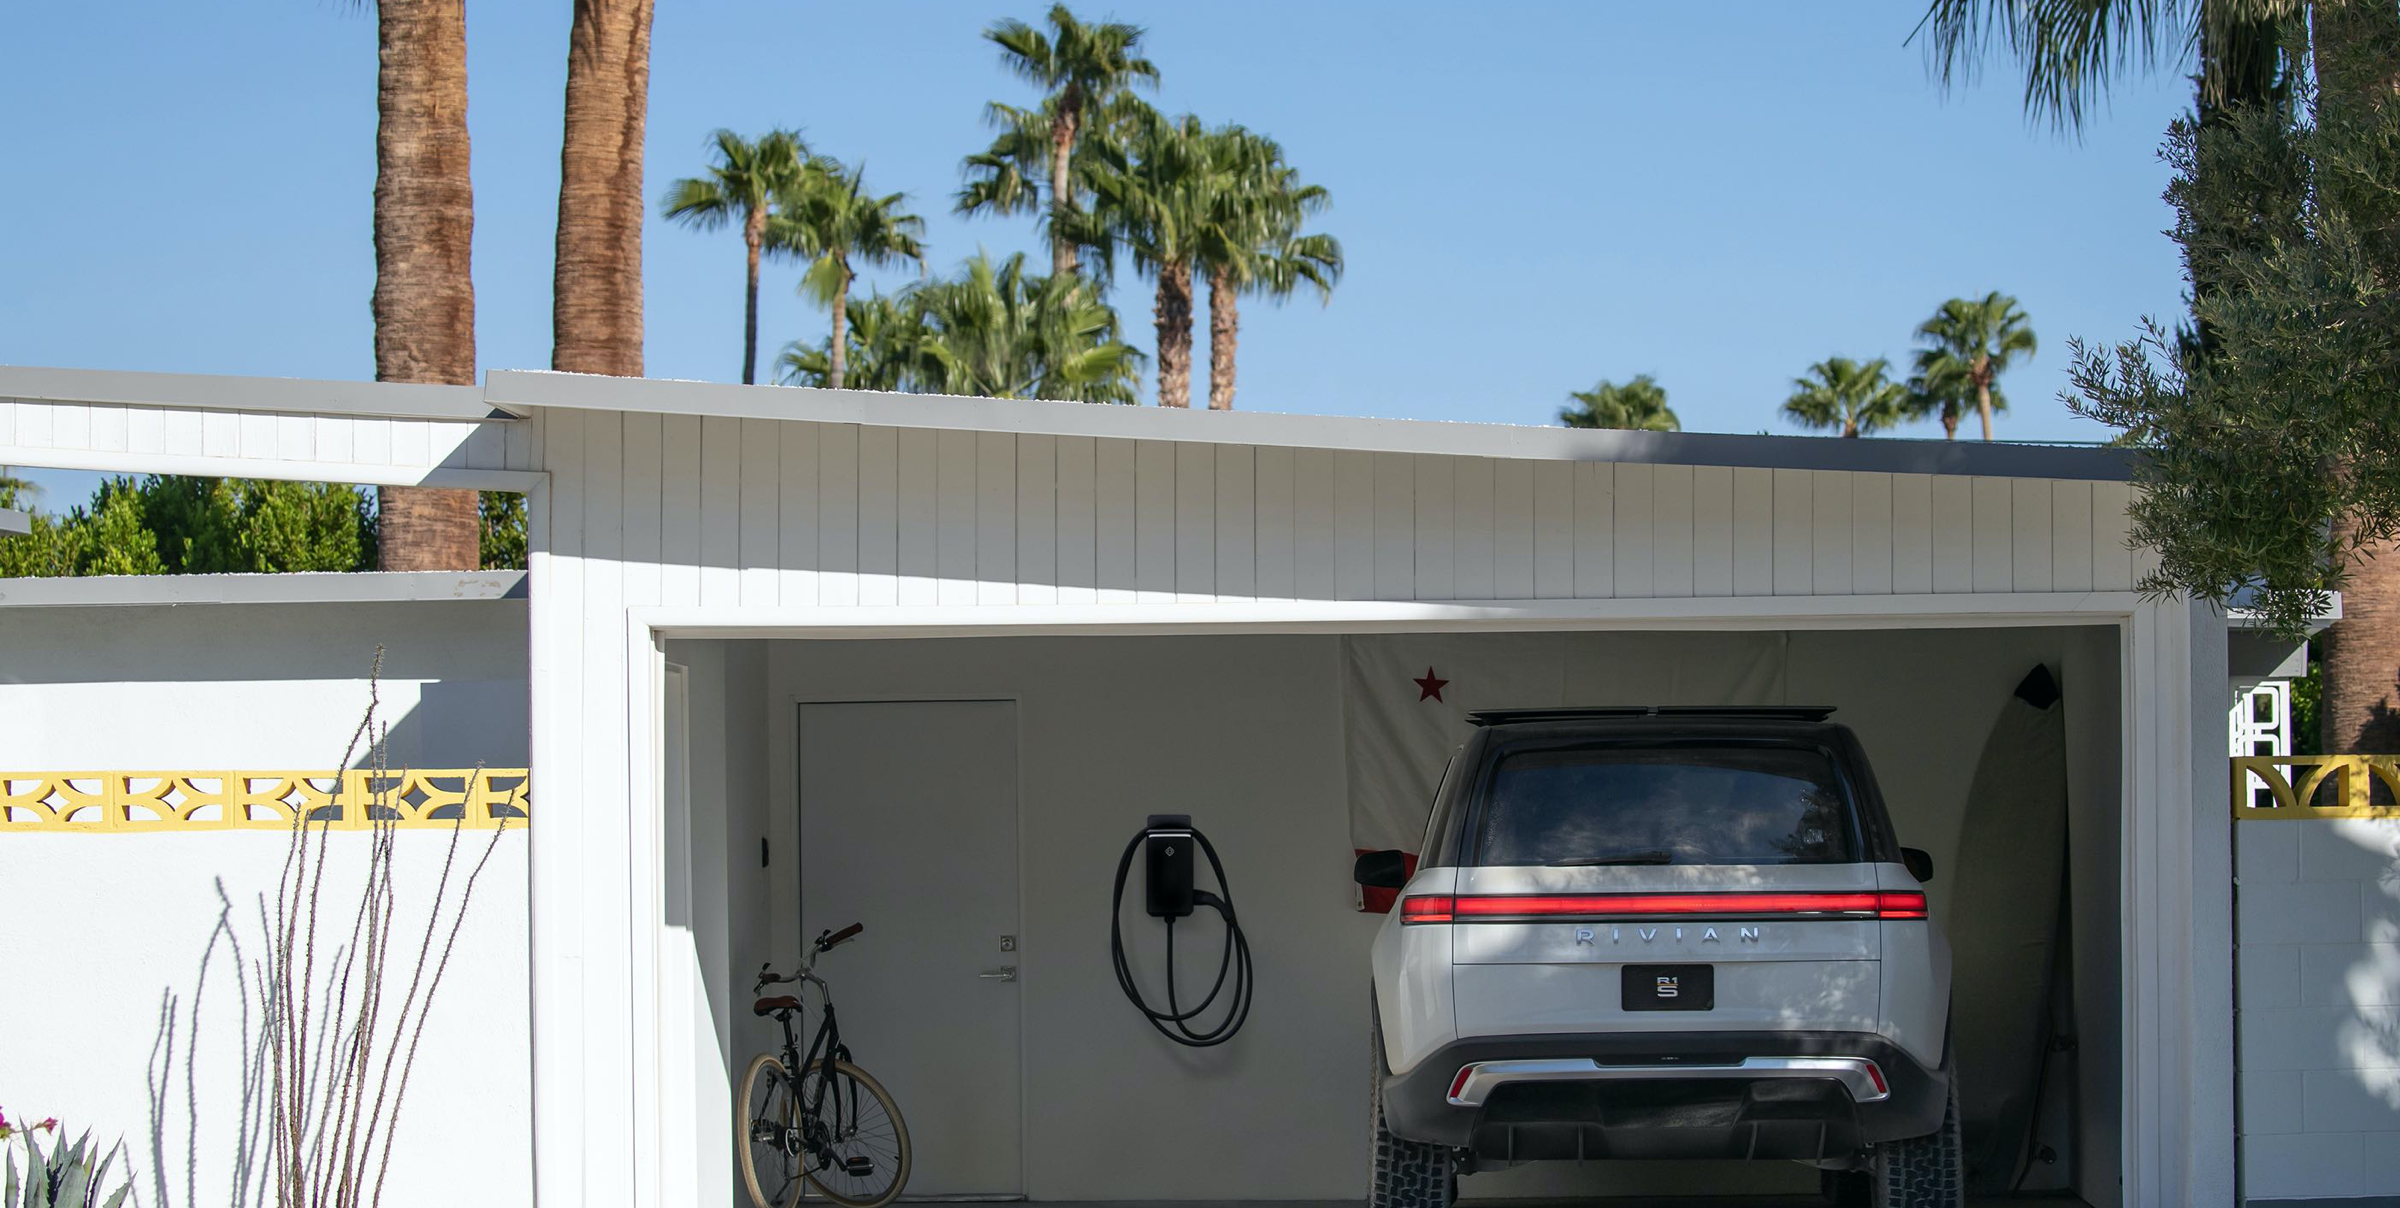 rivian ev charging panel in garage next to white vehicle